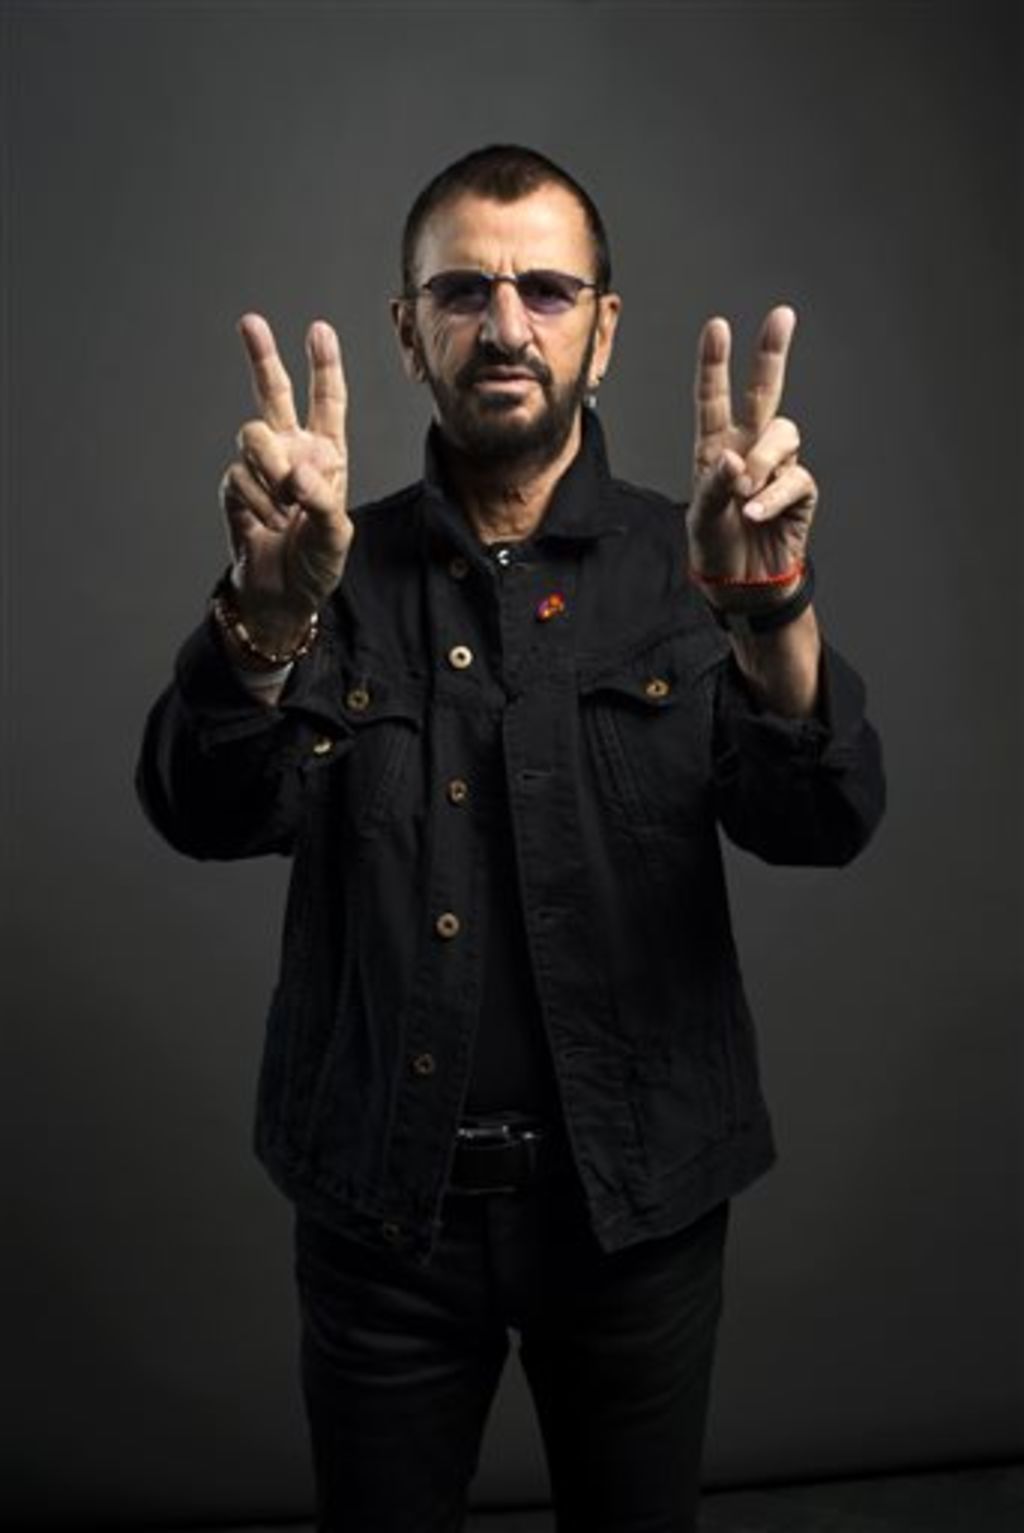 Quiere Ringo Starr expandir su mensaje de paz y amor